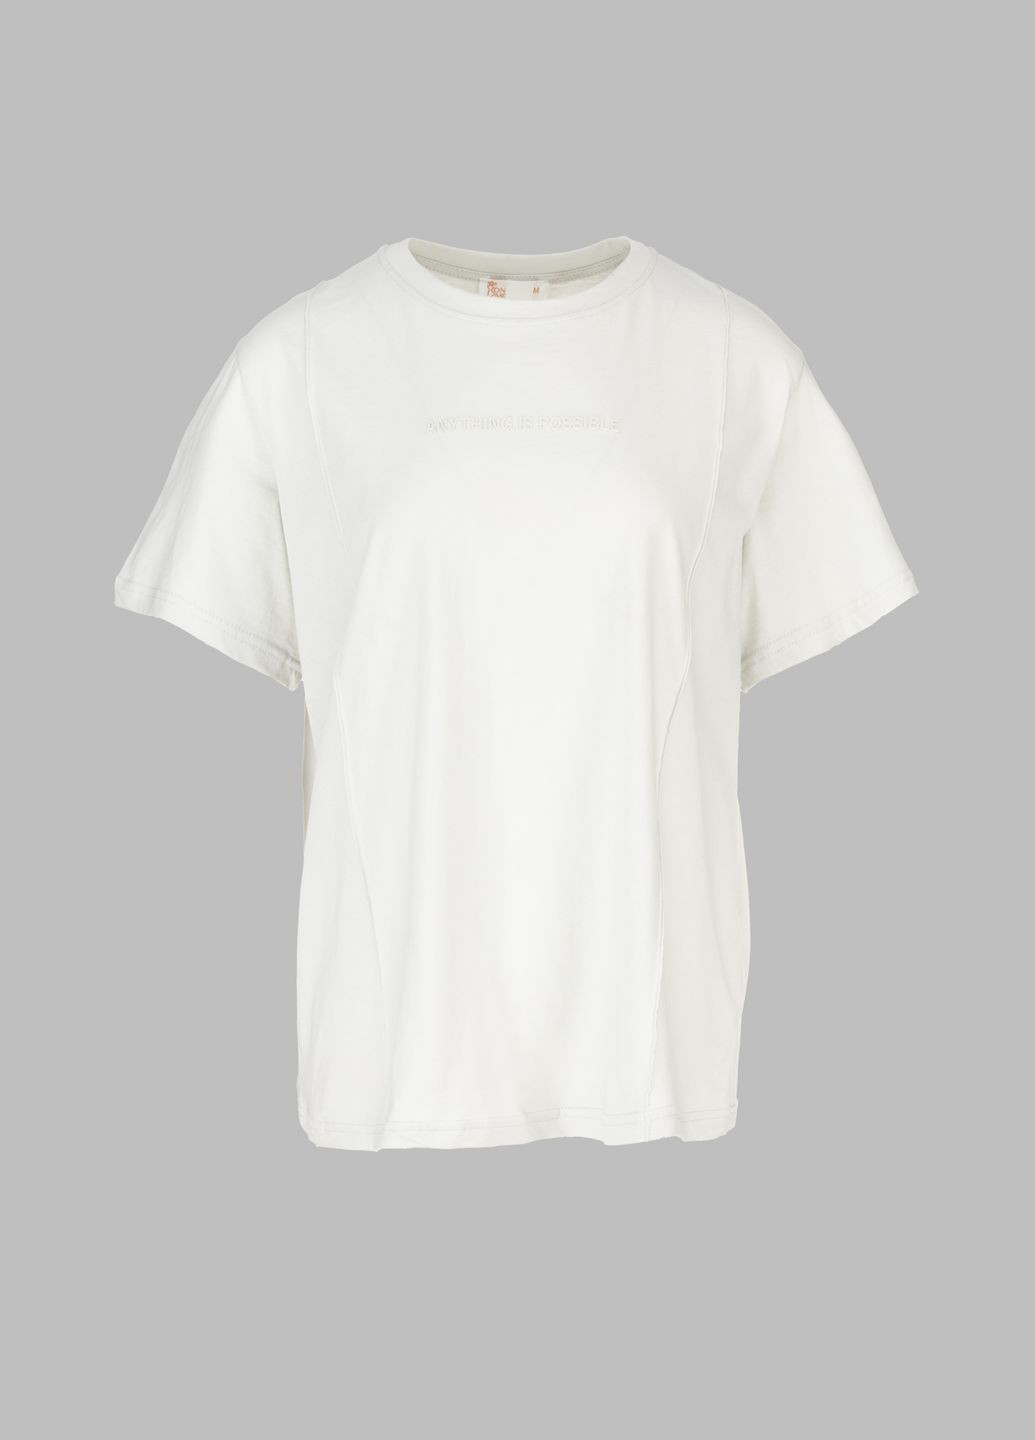 Светло-серая летняя футболка PEPPER MINT